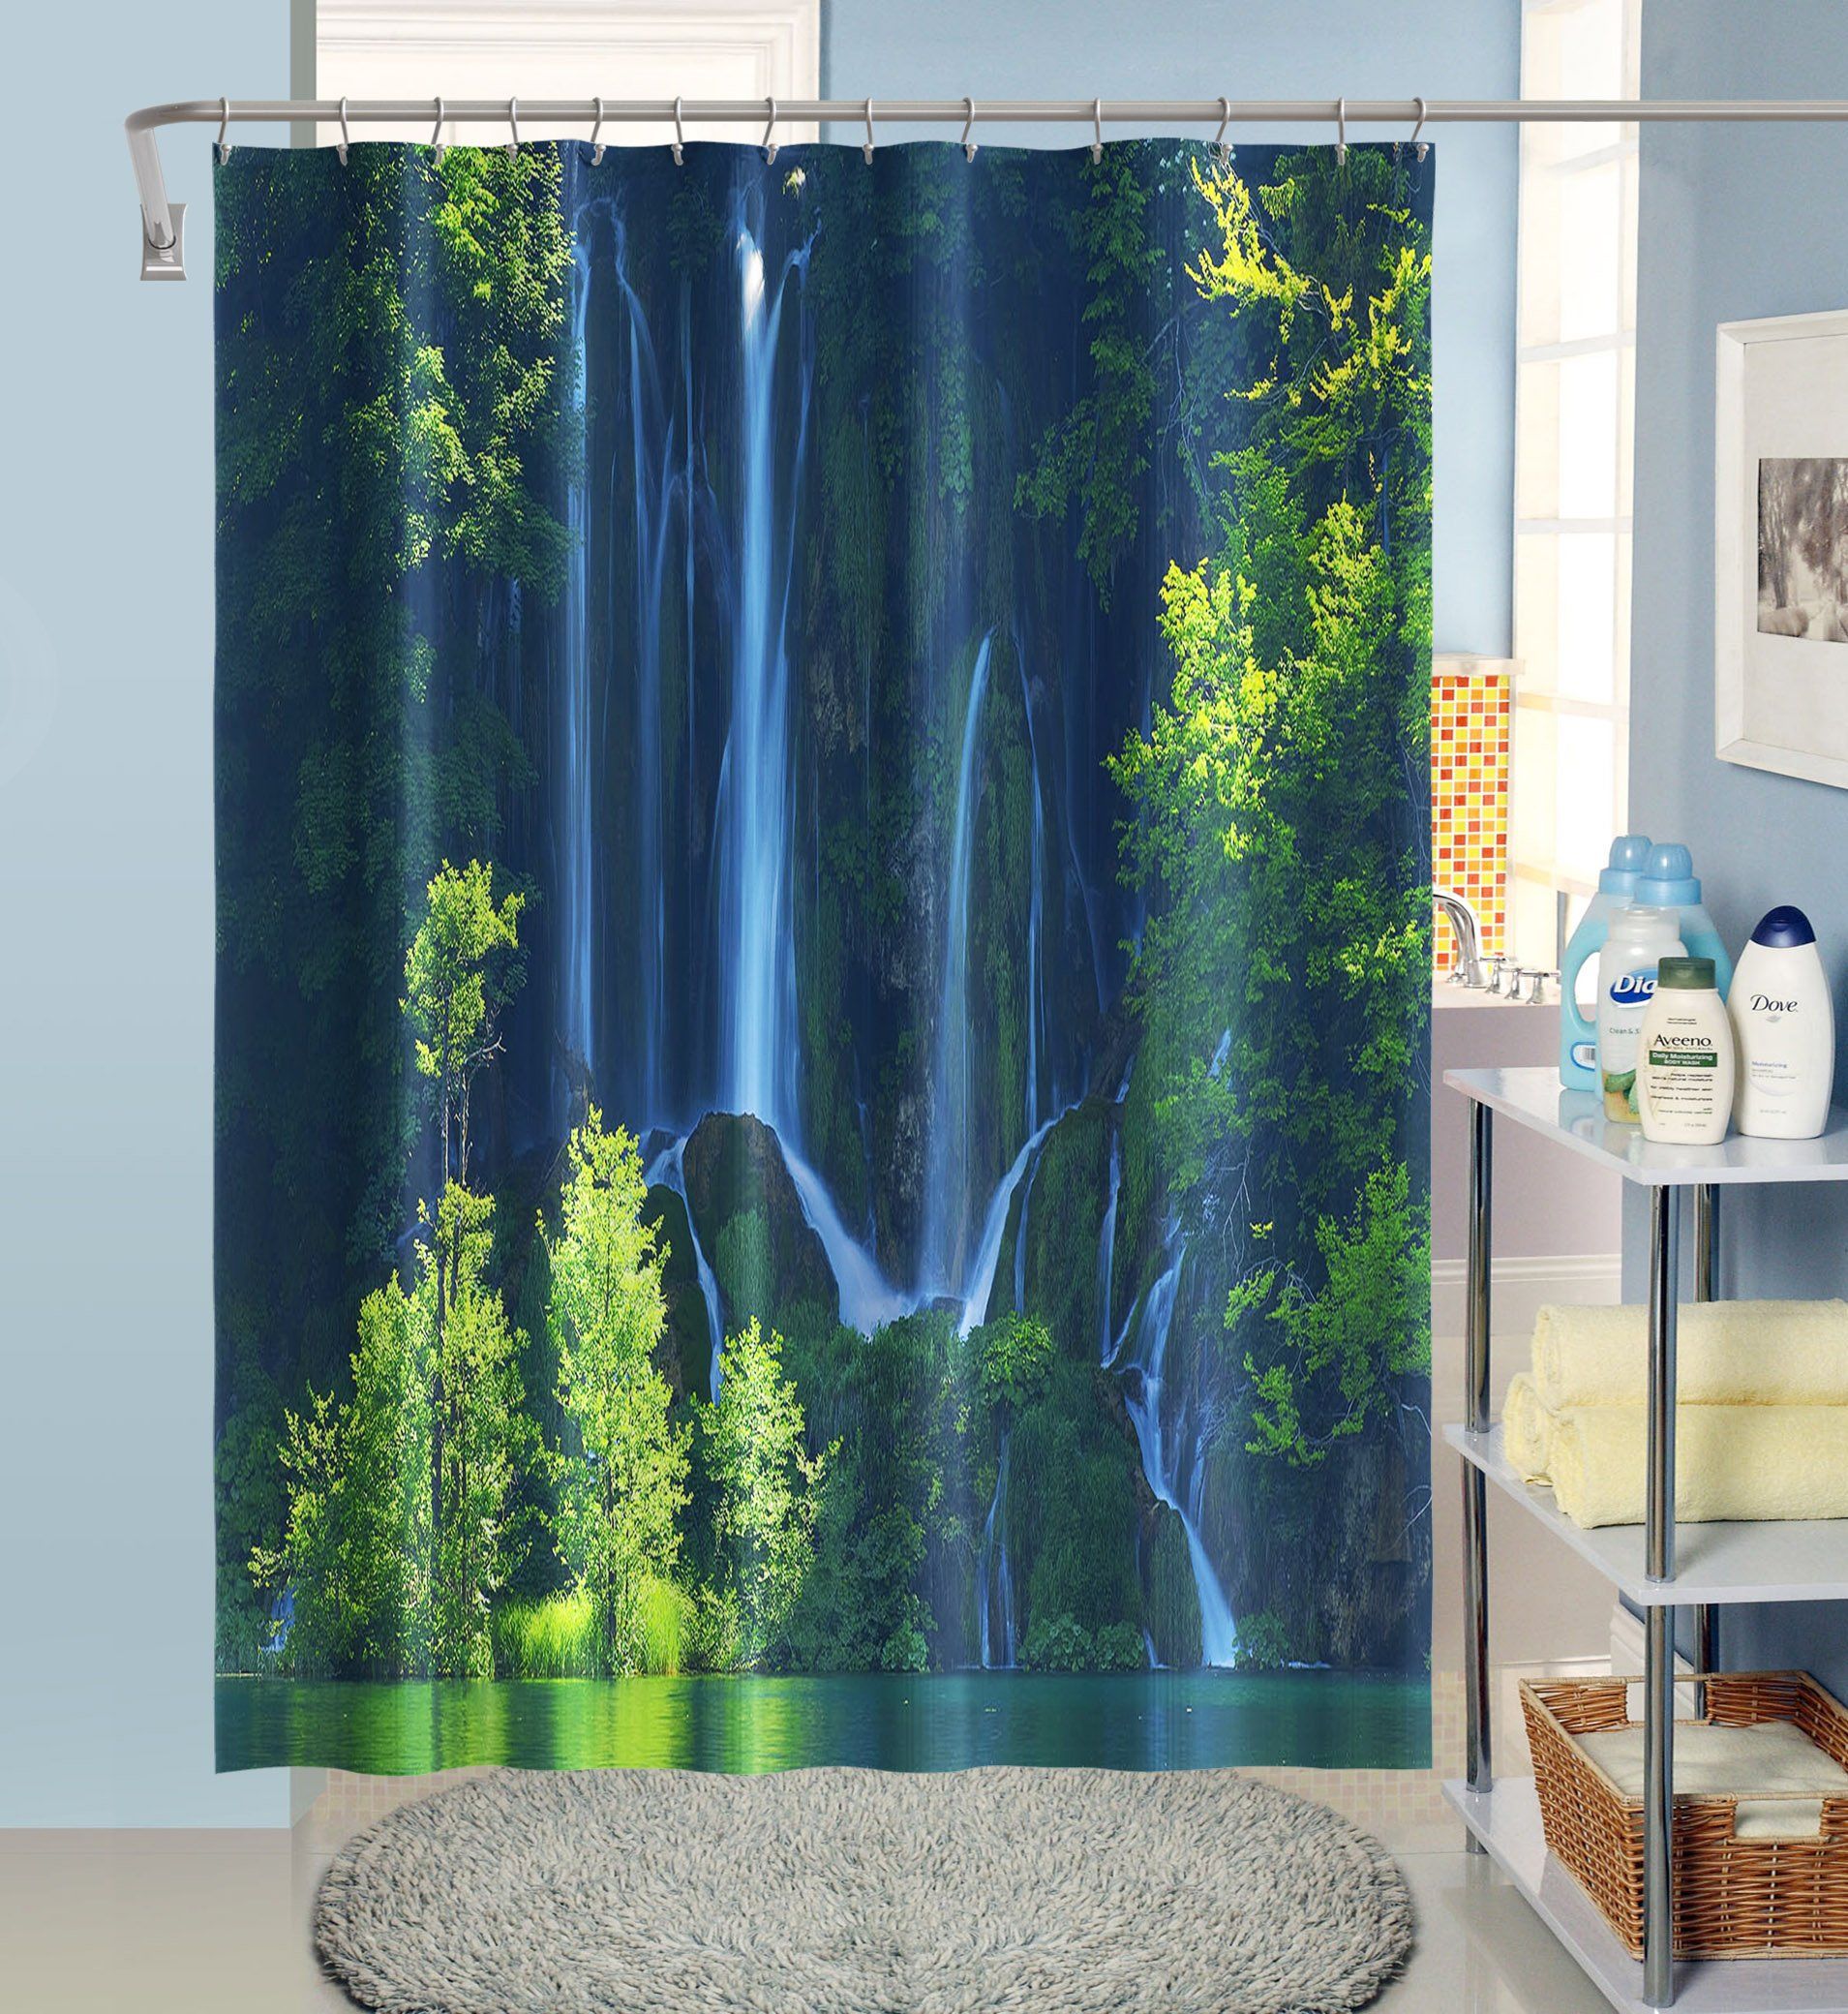 3D Cliff Waterfall 031 Shower Curtain 3D Shower Curtain AJ Creativity Home 